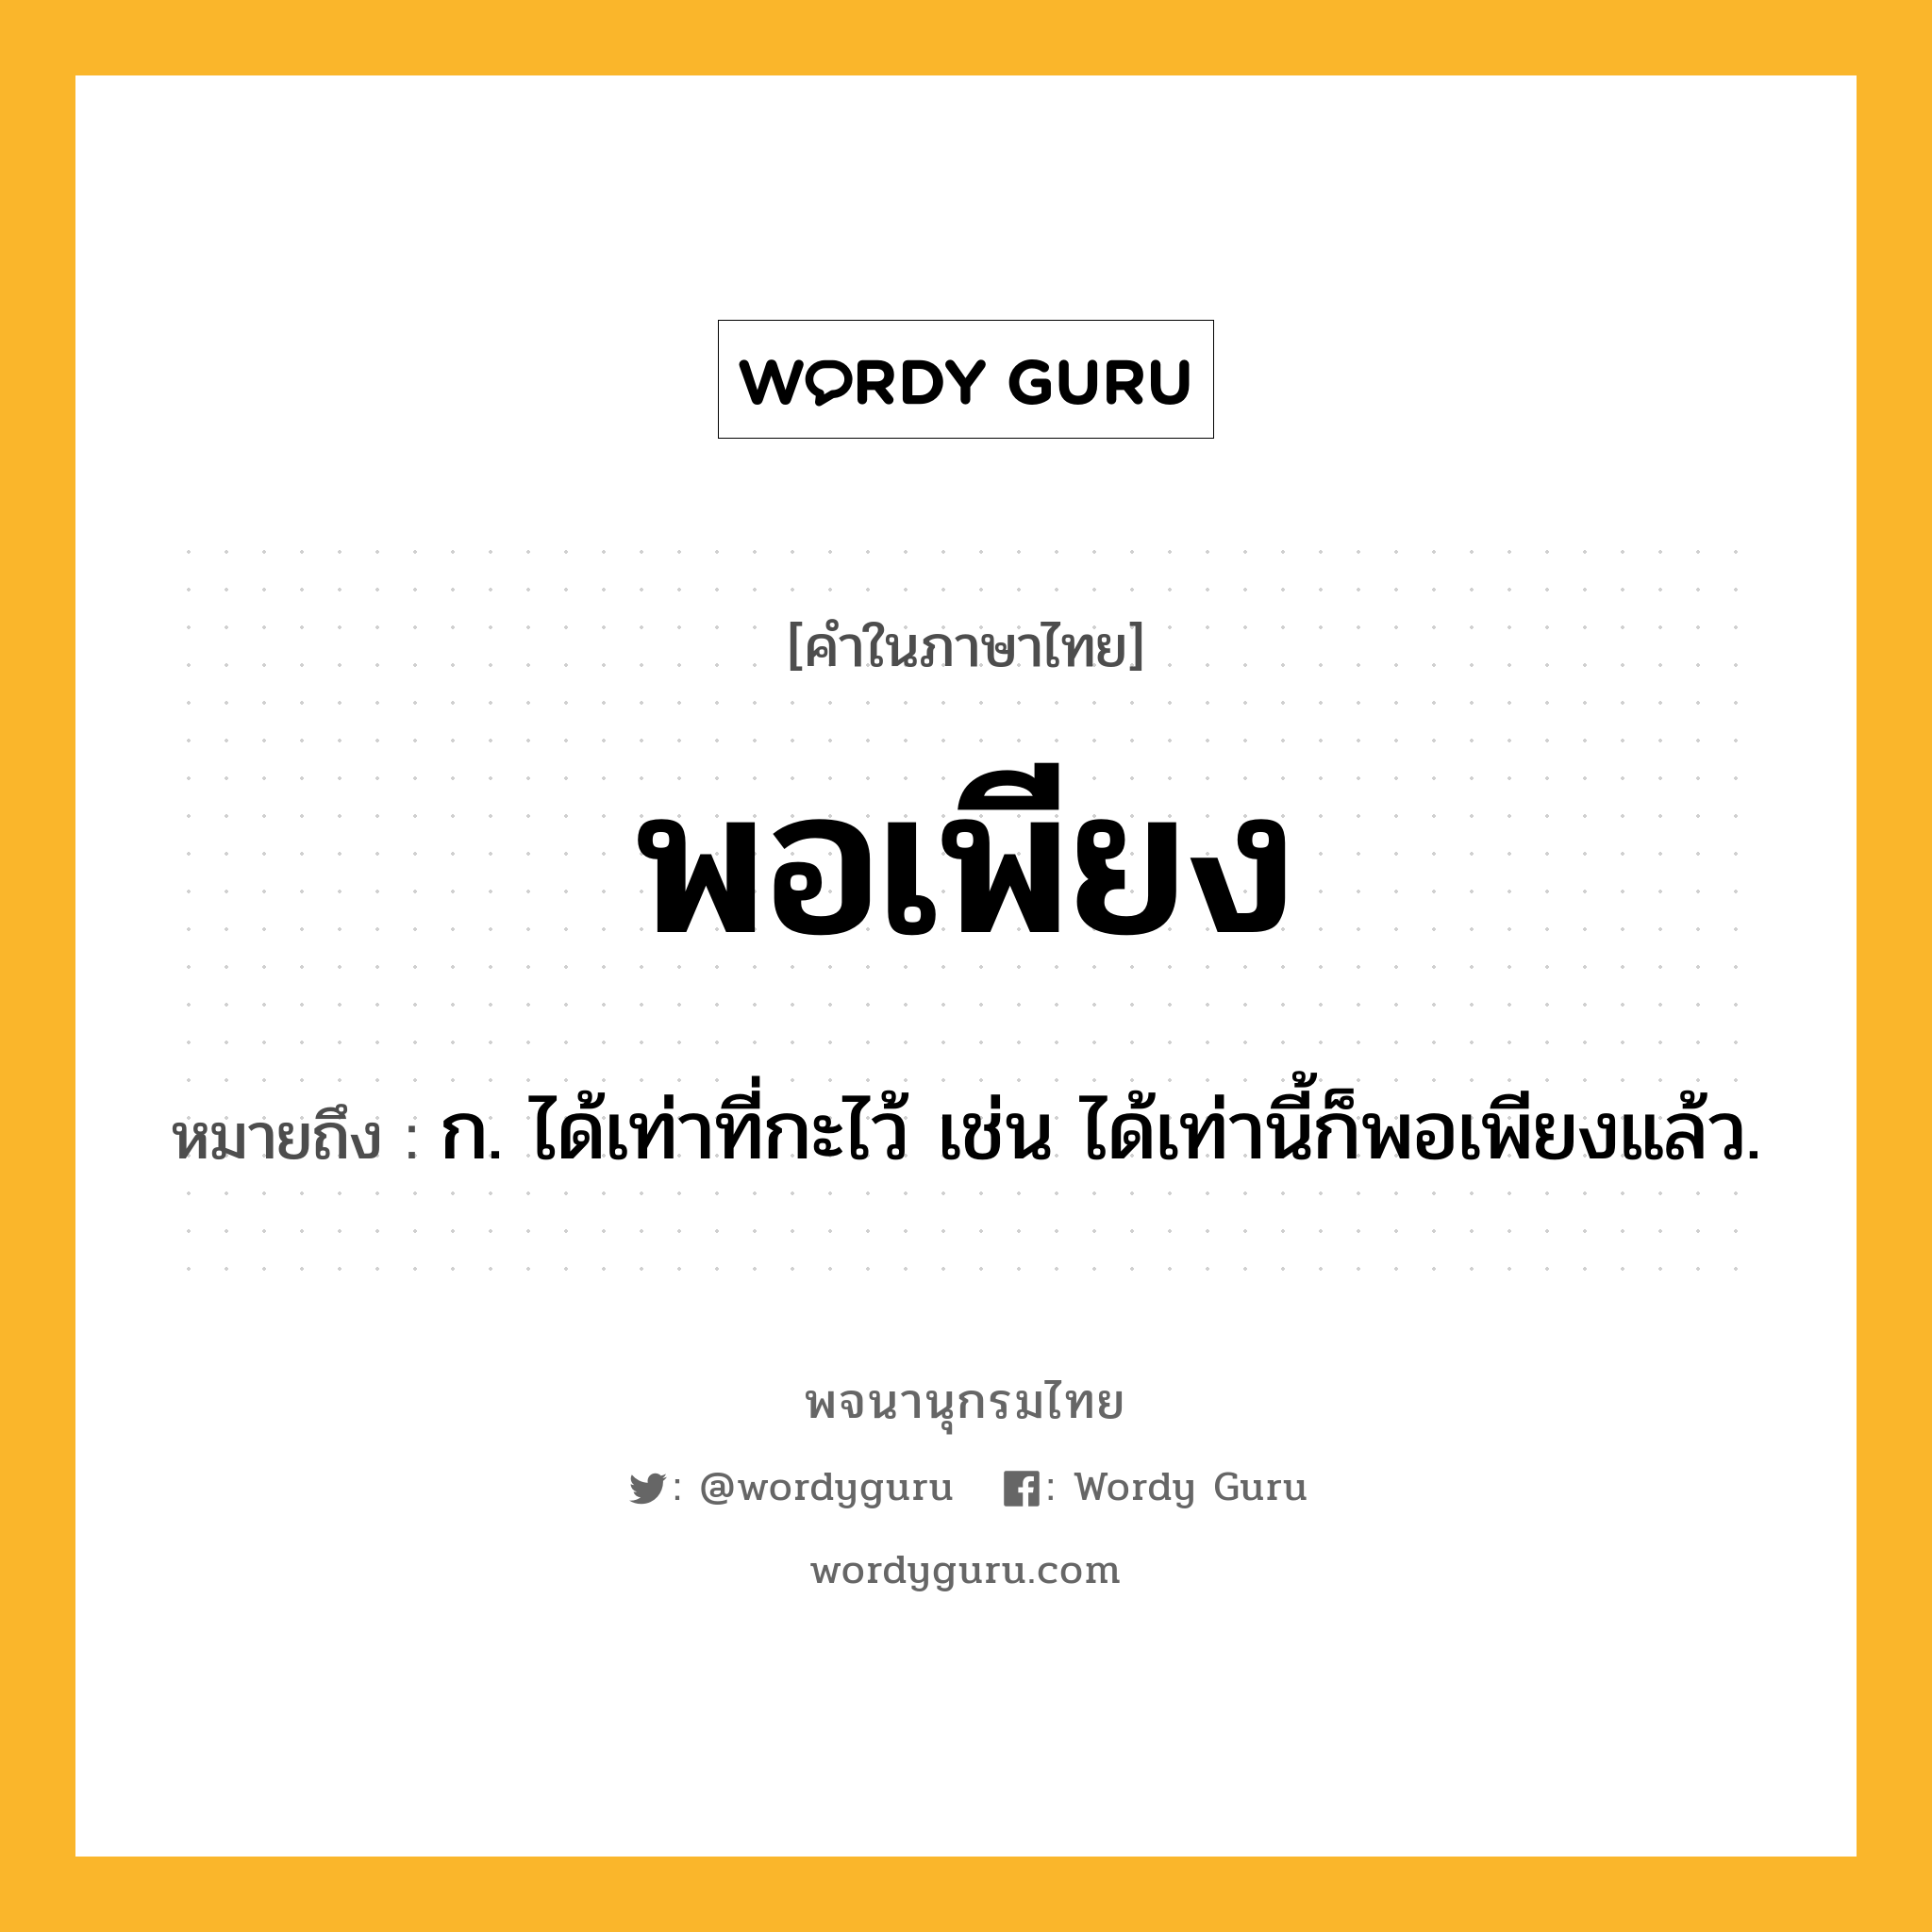 พอเพียง หมายถึงอะไร?, คำในภาษาไทย พอเพียง หมายถึง ก. ได้เท่าที่กะไว้ เช่น ได้เท่านี้ก็พอเพียงแล้ว.